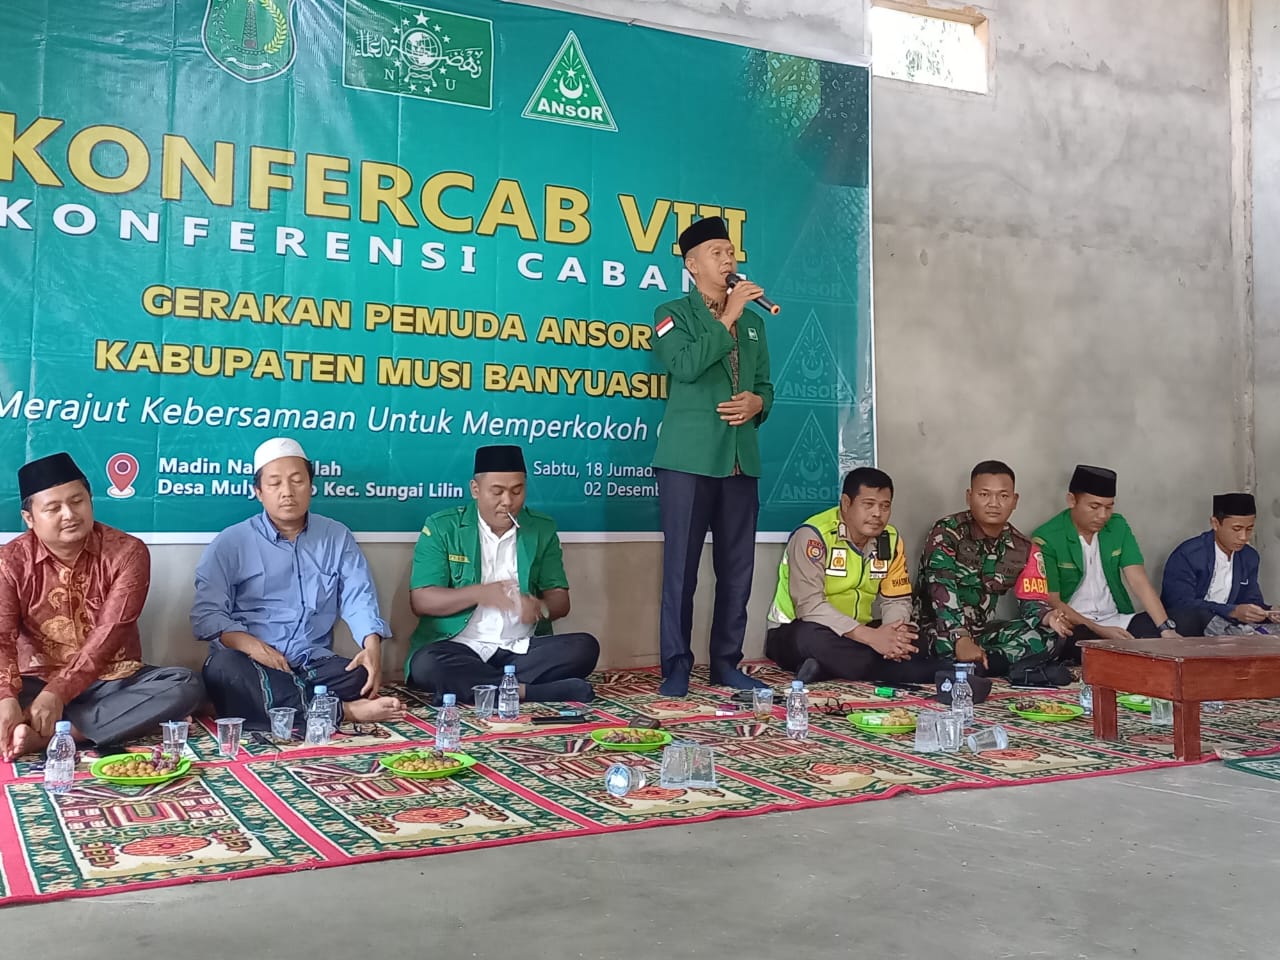 Hasil Konfercab VIII, Ahmad Ghozin Kembali Terpilih Ketua GP Ansor Muba